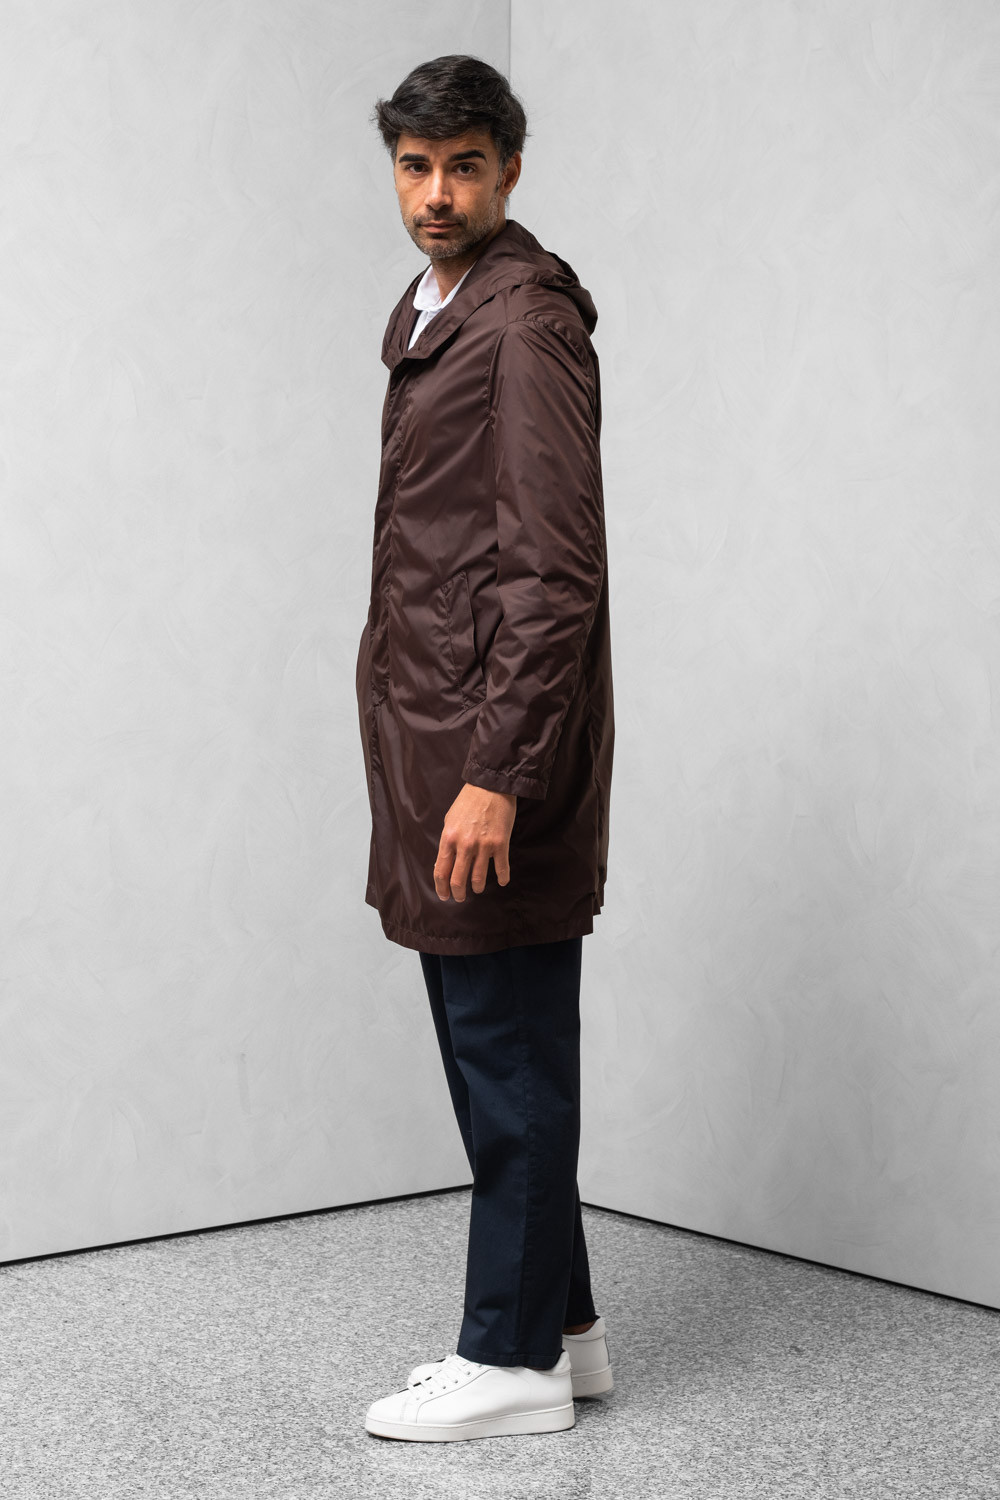 Cappotto idrorepellente uomo cappuccio tasca porta cappotto arancione 0909 PARDO-175